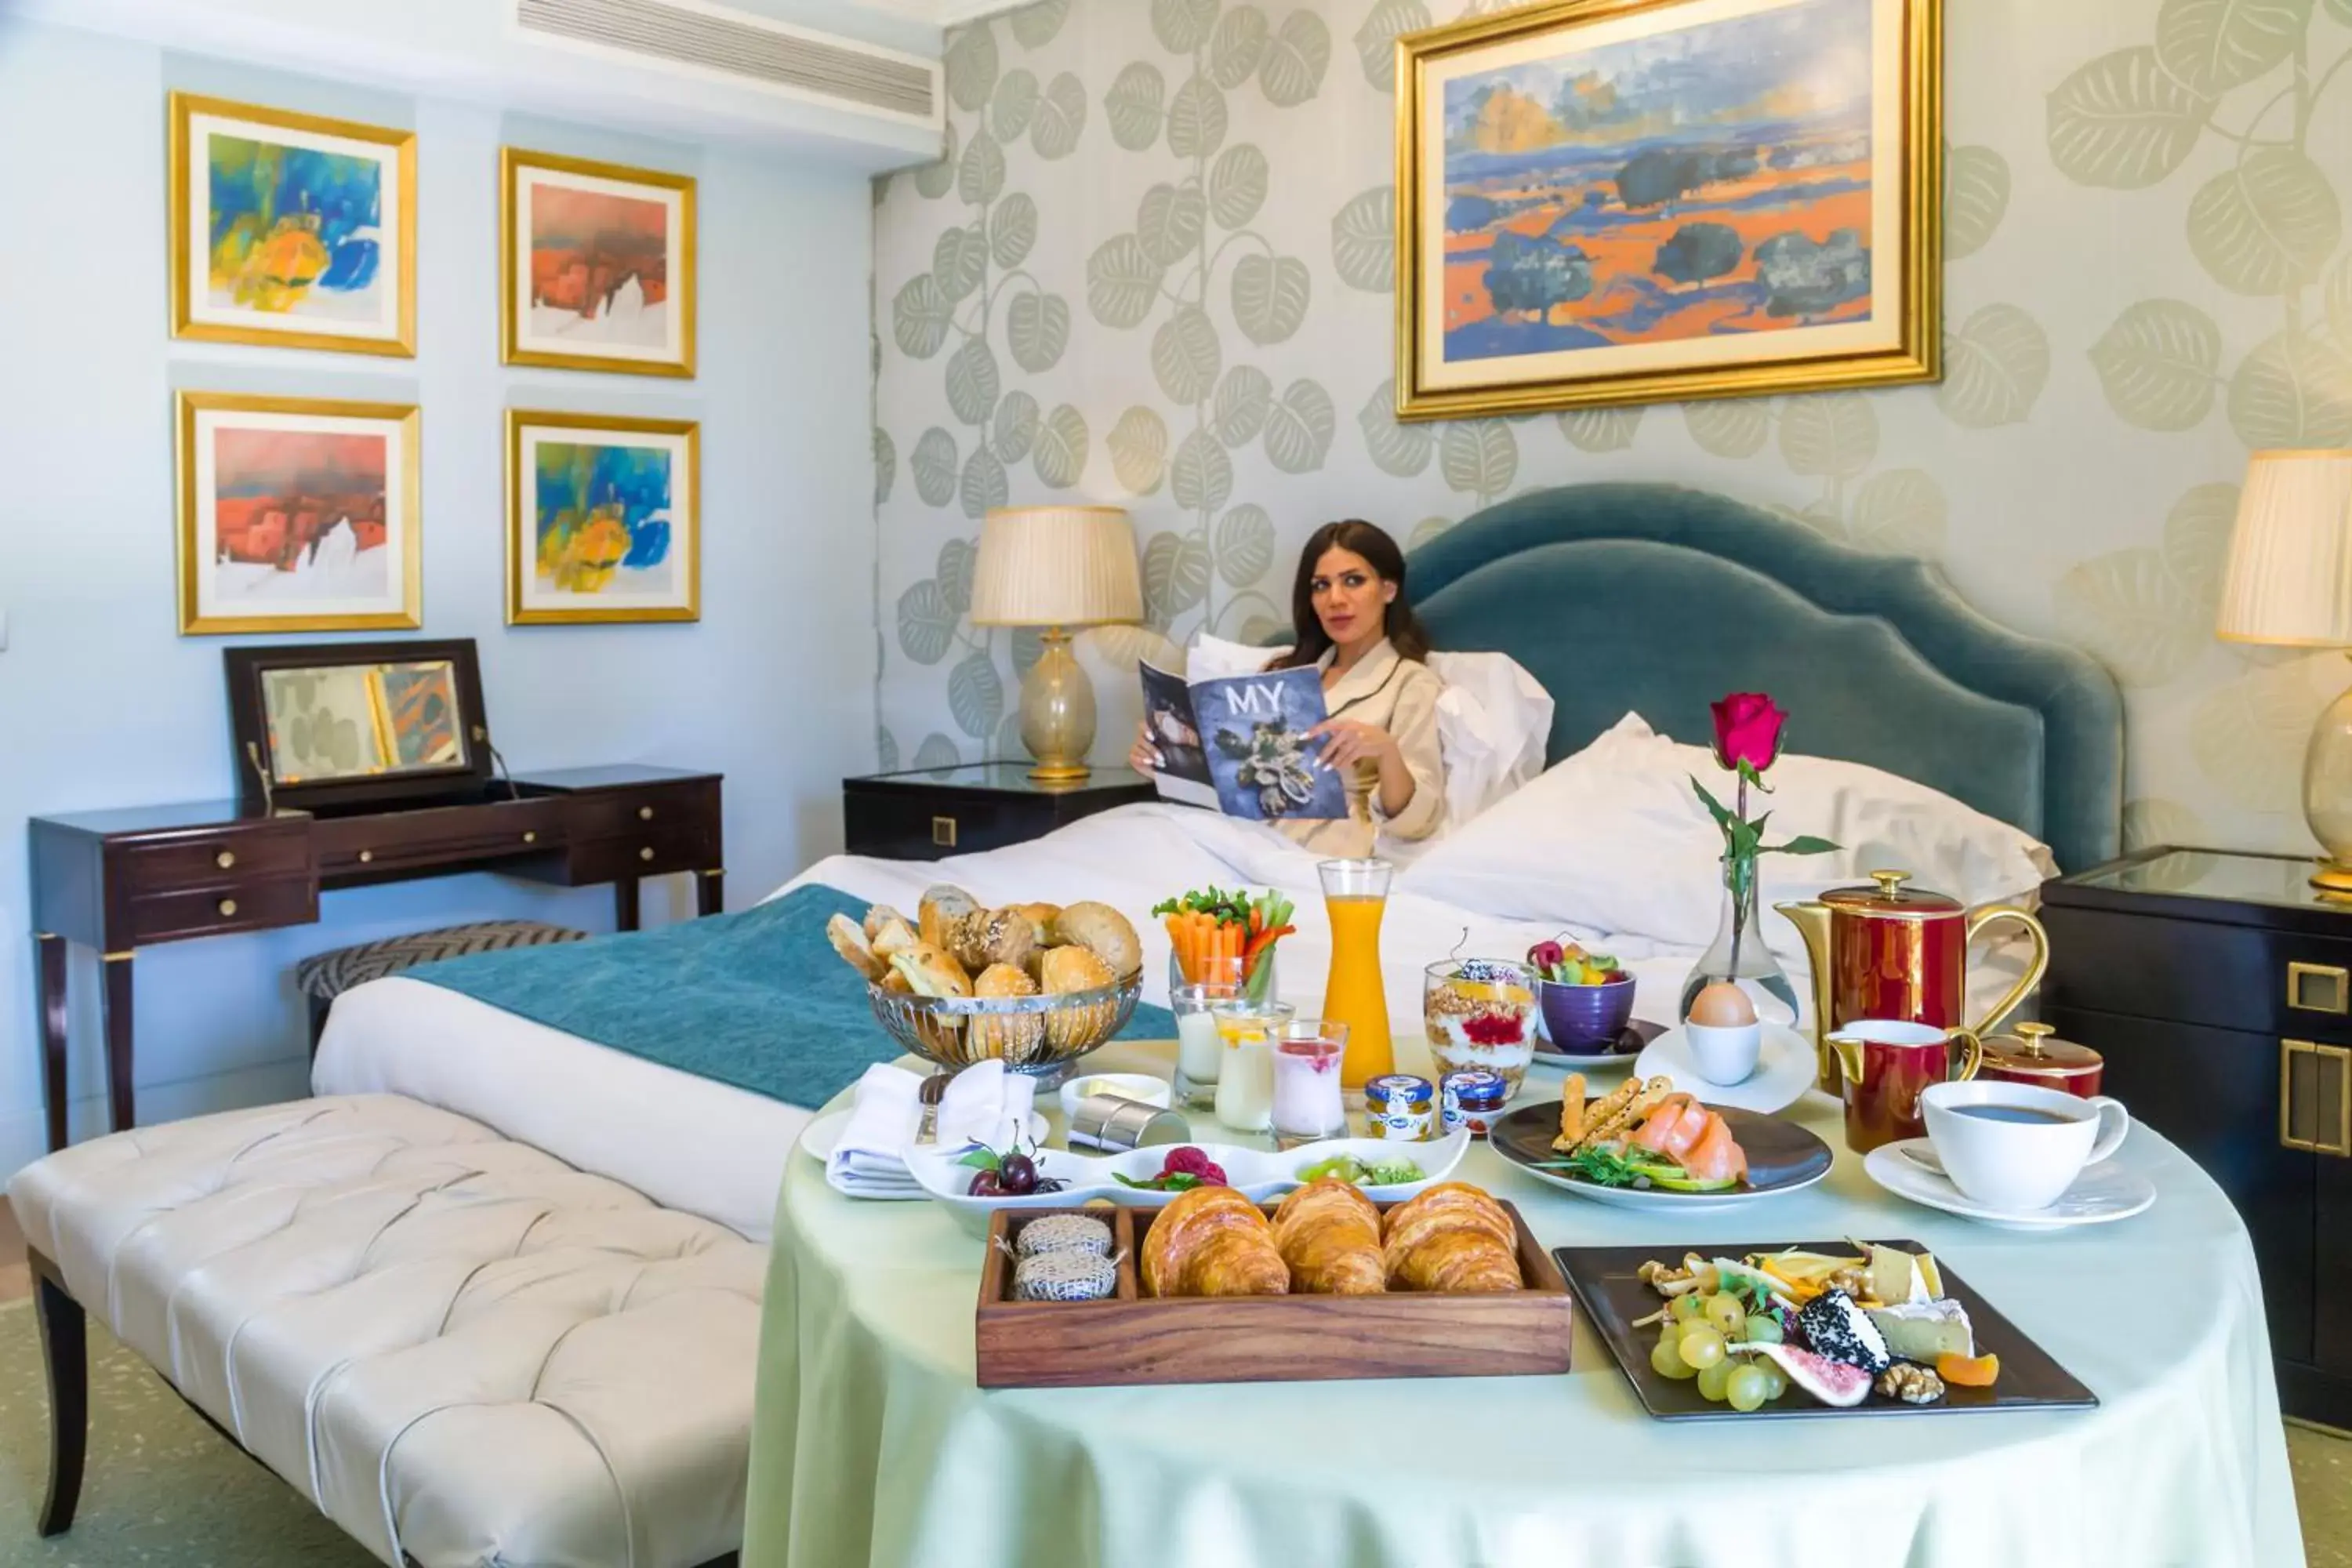 Breakfast in Kempinski Nile Hotel, Cairo